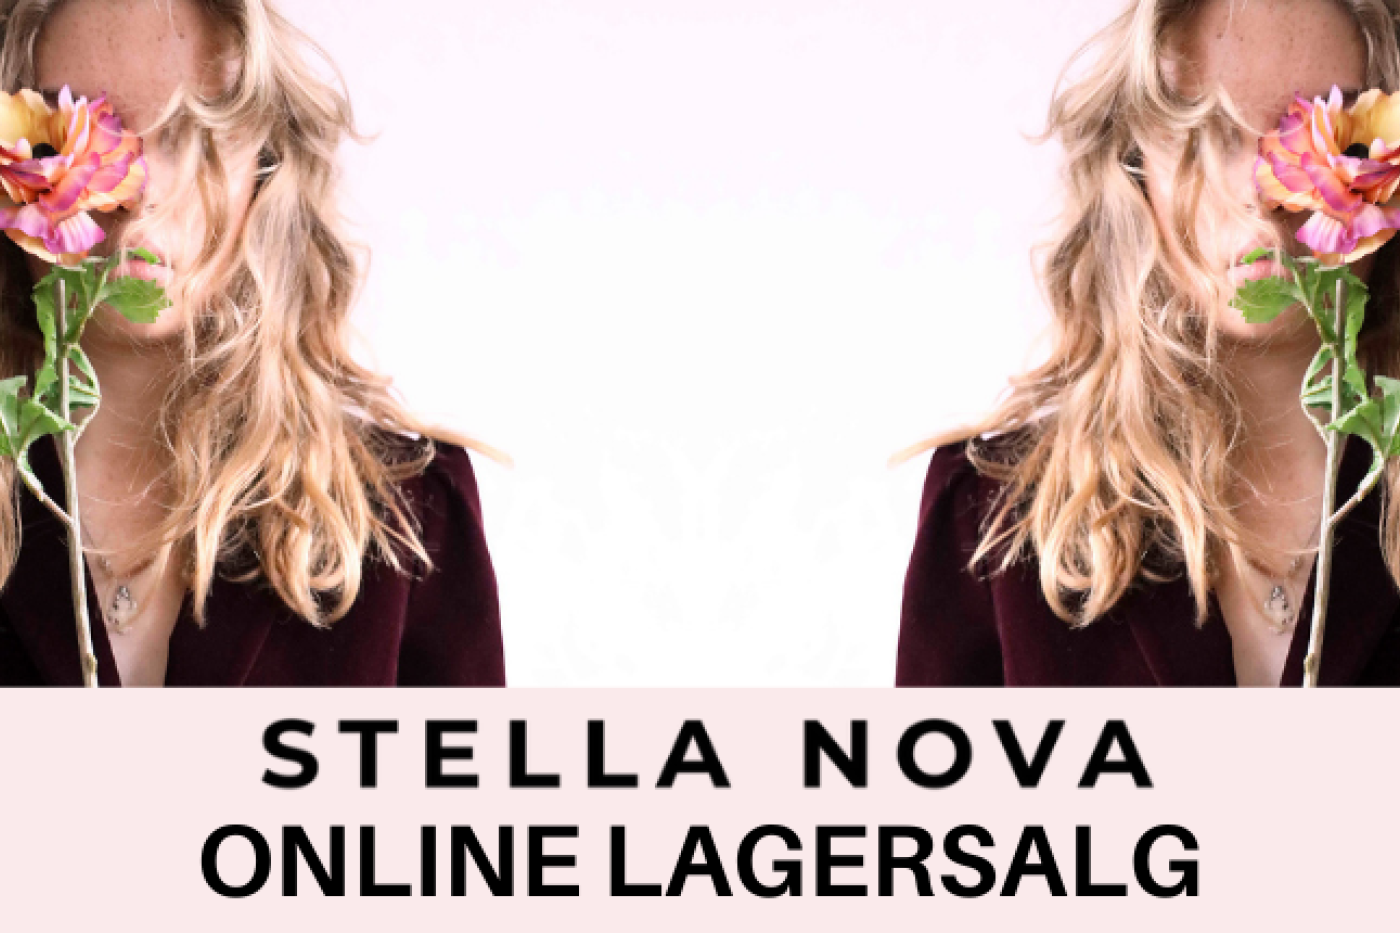 Stella Nova online lagersalg